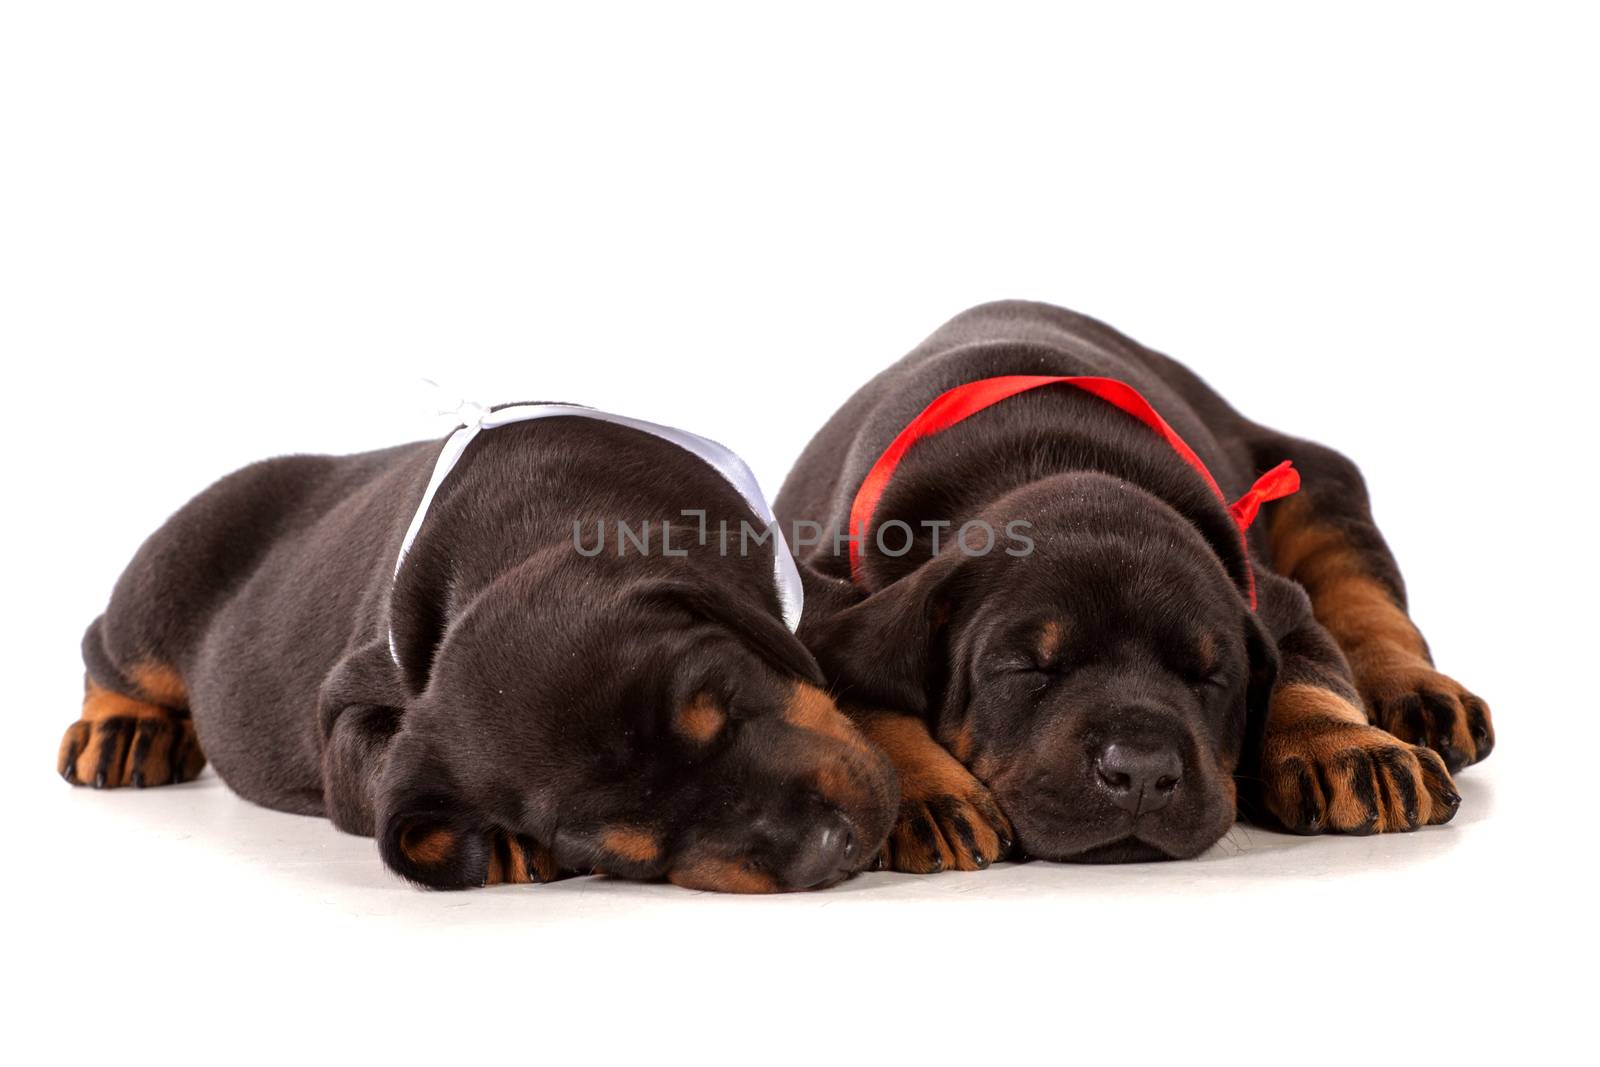 Sleeping dobermann puppies by gsdonlin